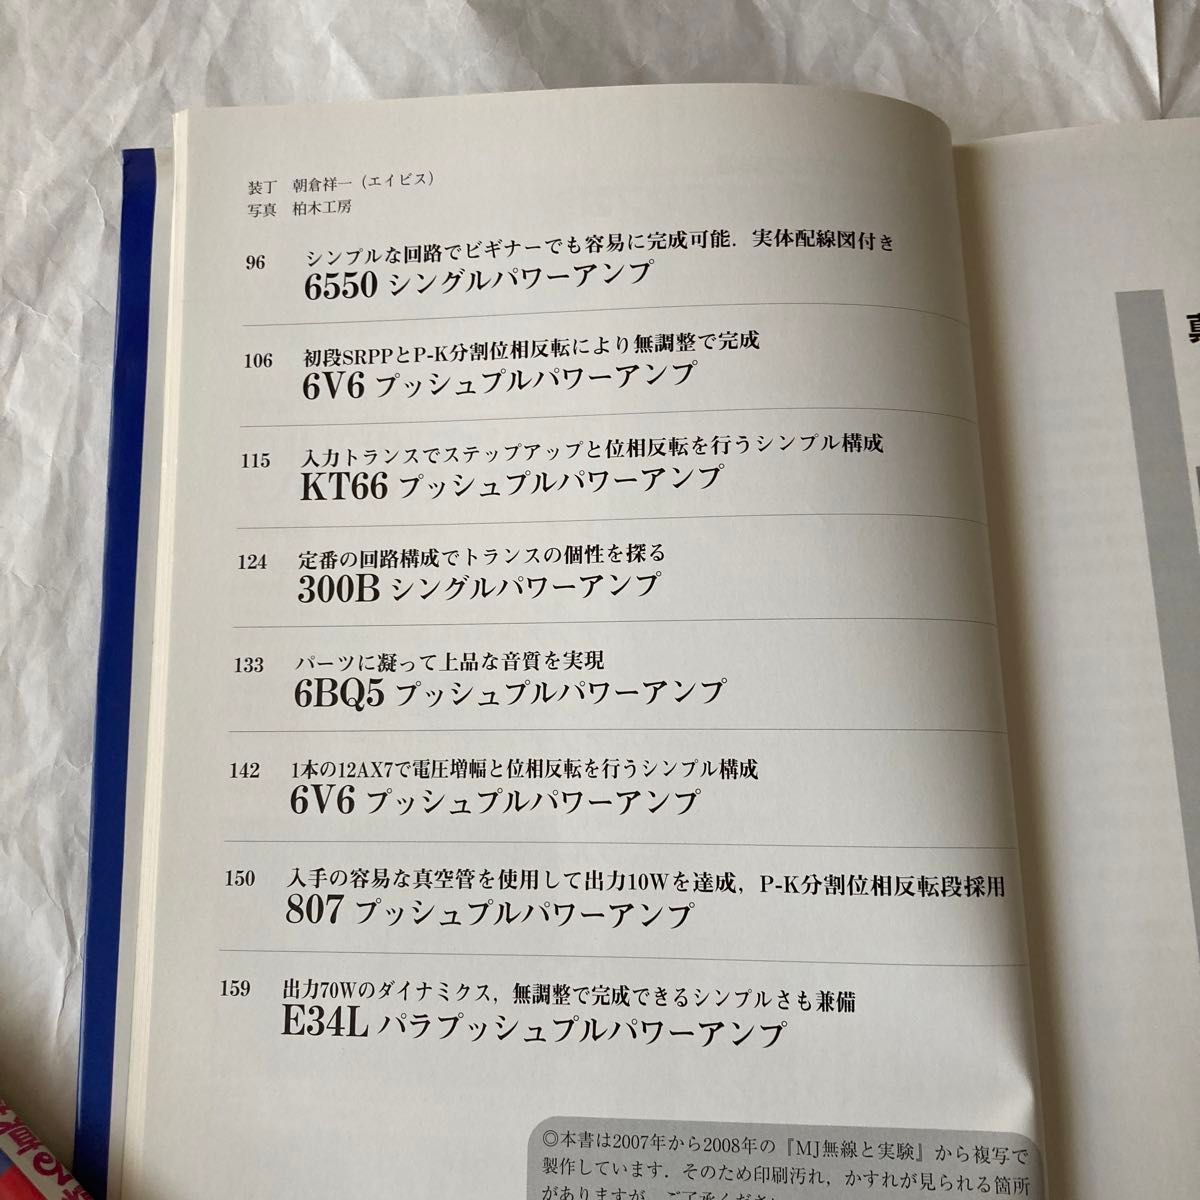 真空管オーディオアンプ製作　2008年10月発行  岩村氏他3氏製作記事　なかなか参考になる書籍です。